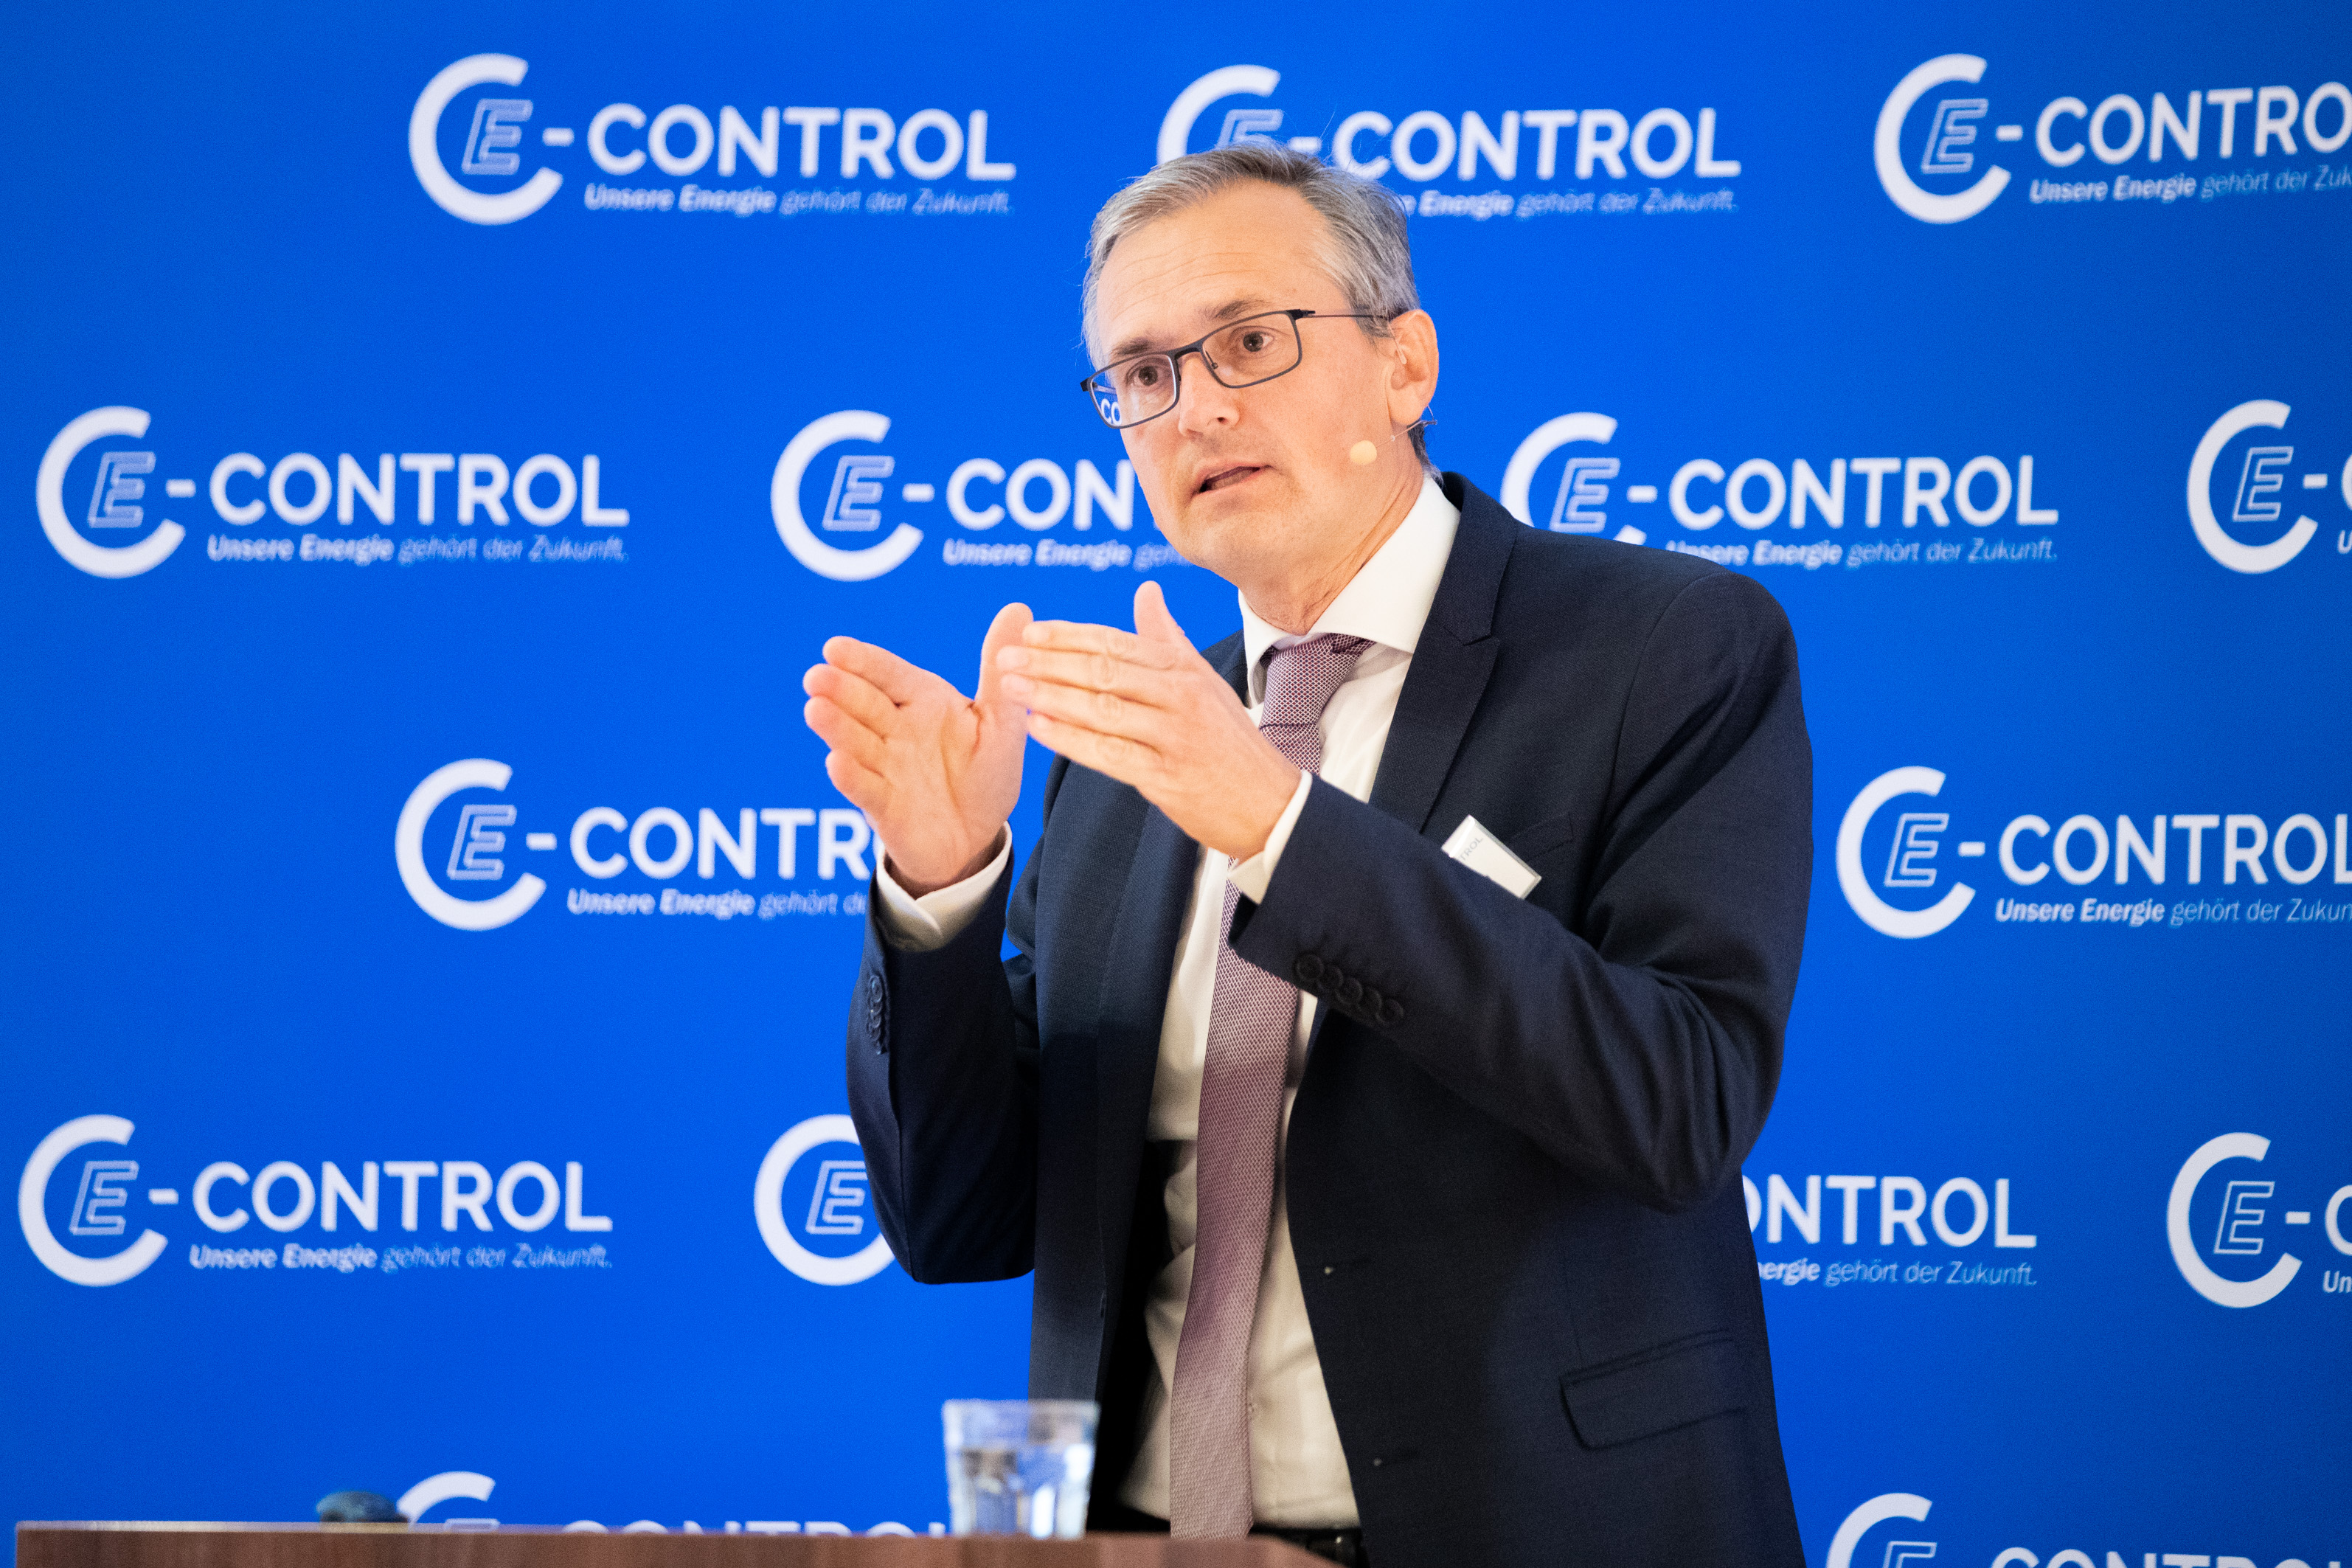 Wolfgang Urbantschitsch, E-Control